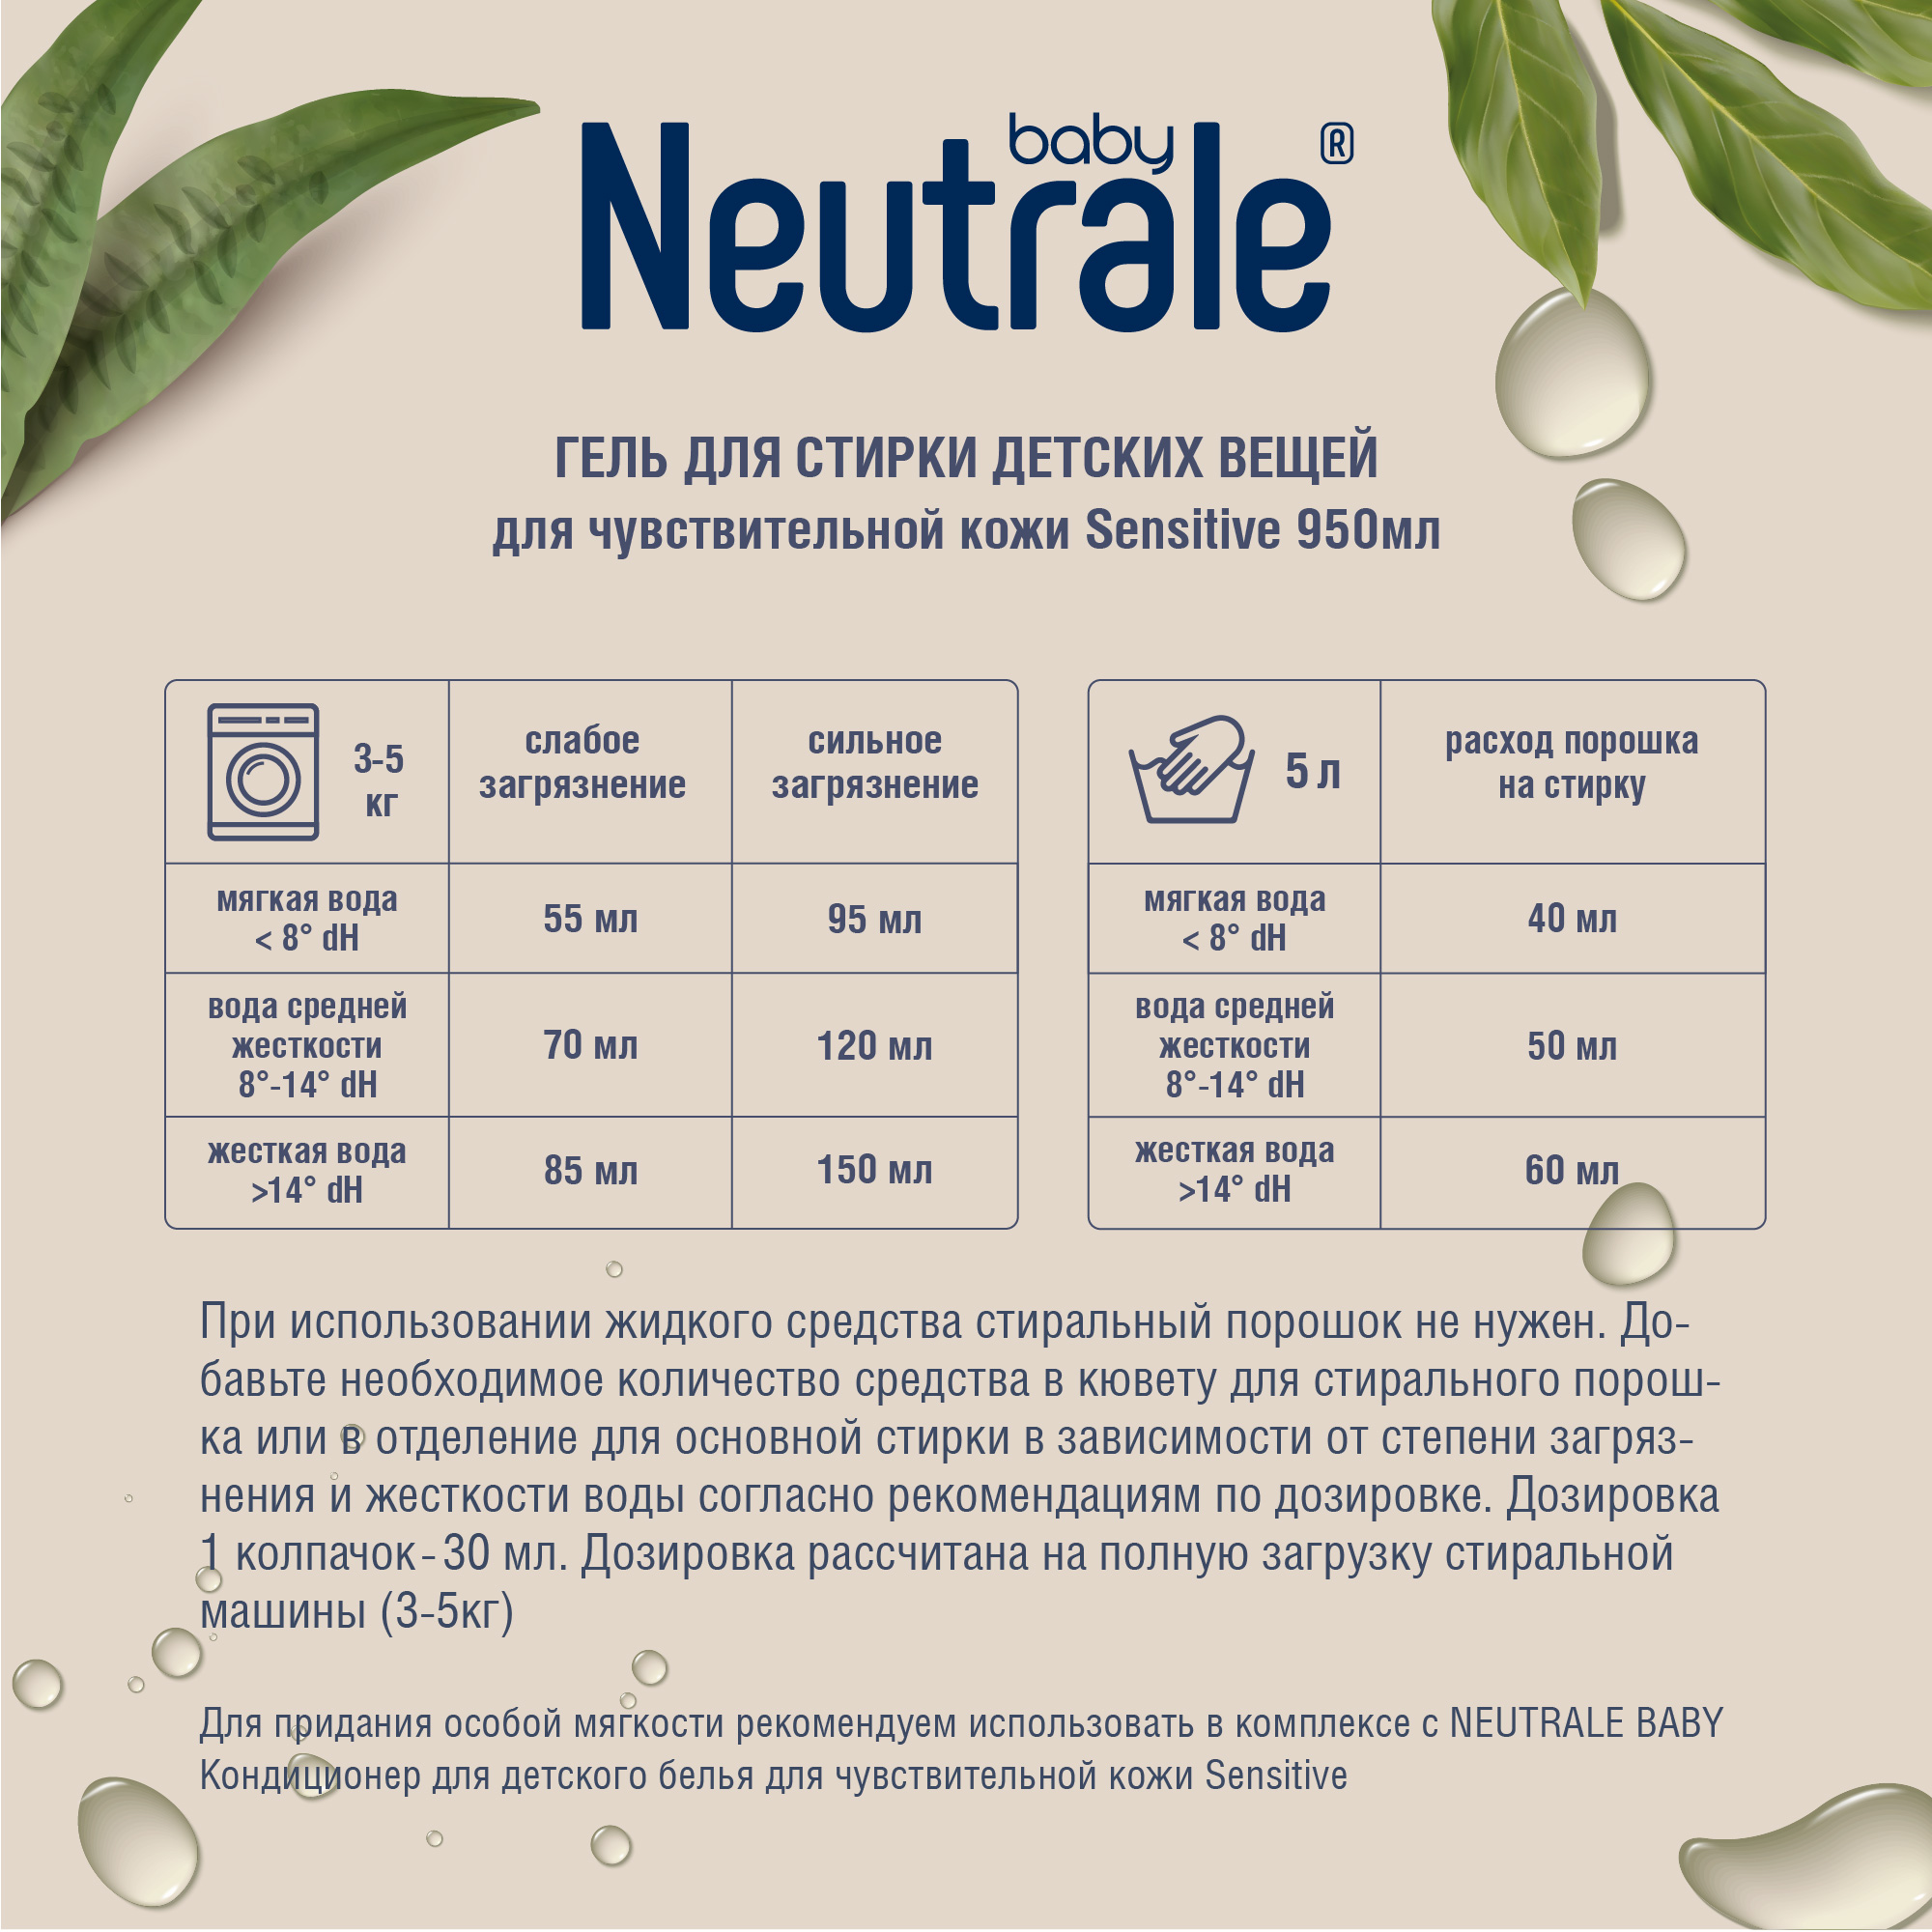 Гель для стирки Neutrale для детской одежды гипоаллергенный без запаха и фосфатов ЭКО 950мл - фото 10